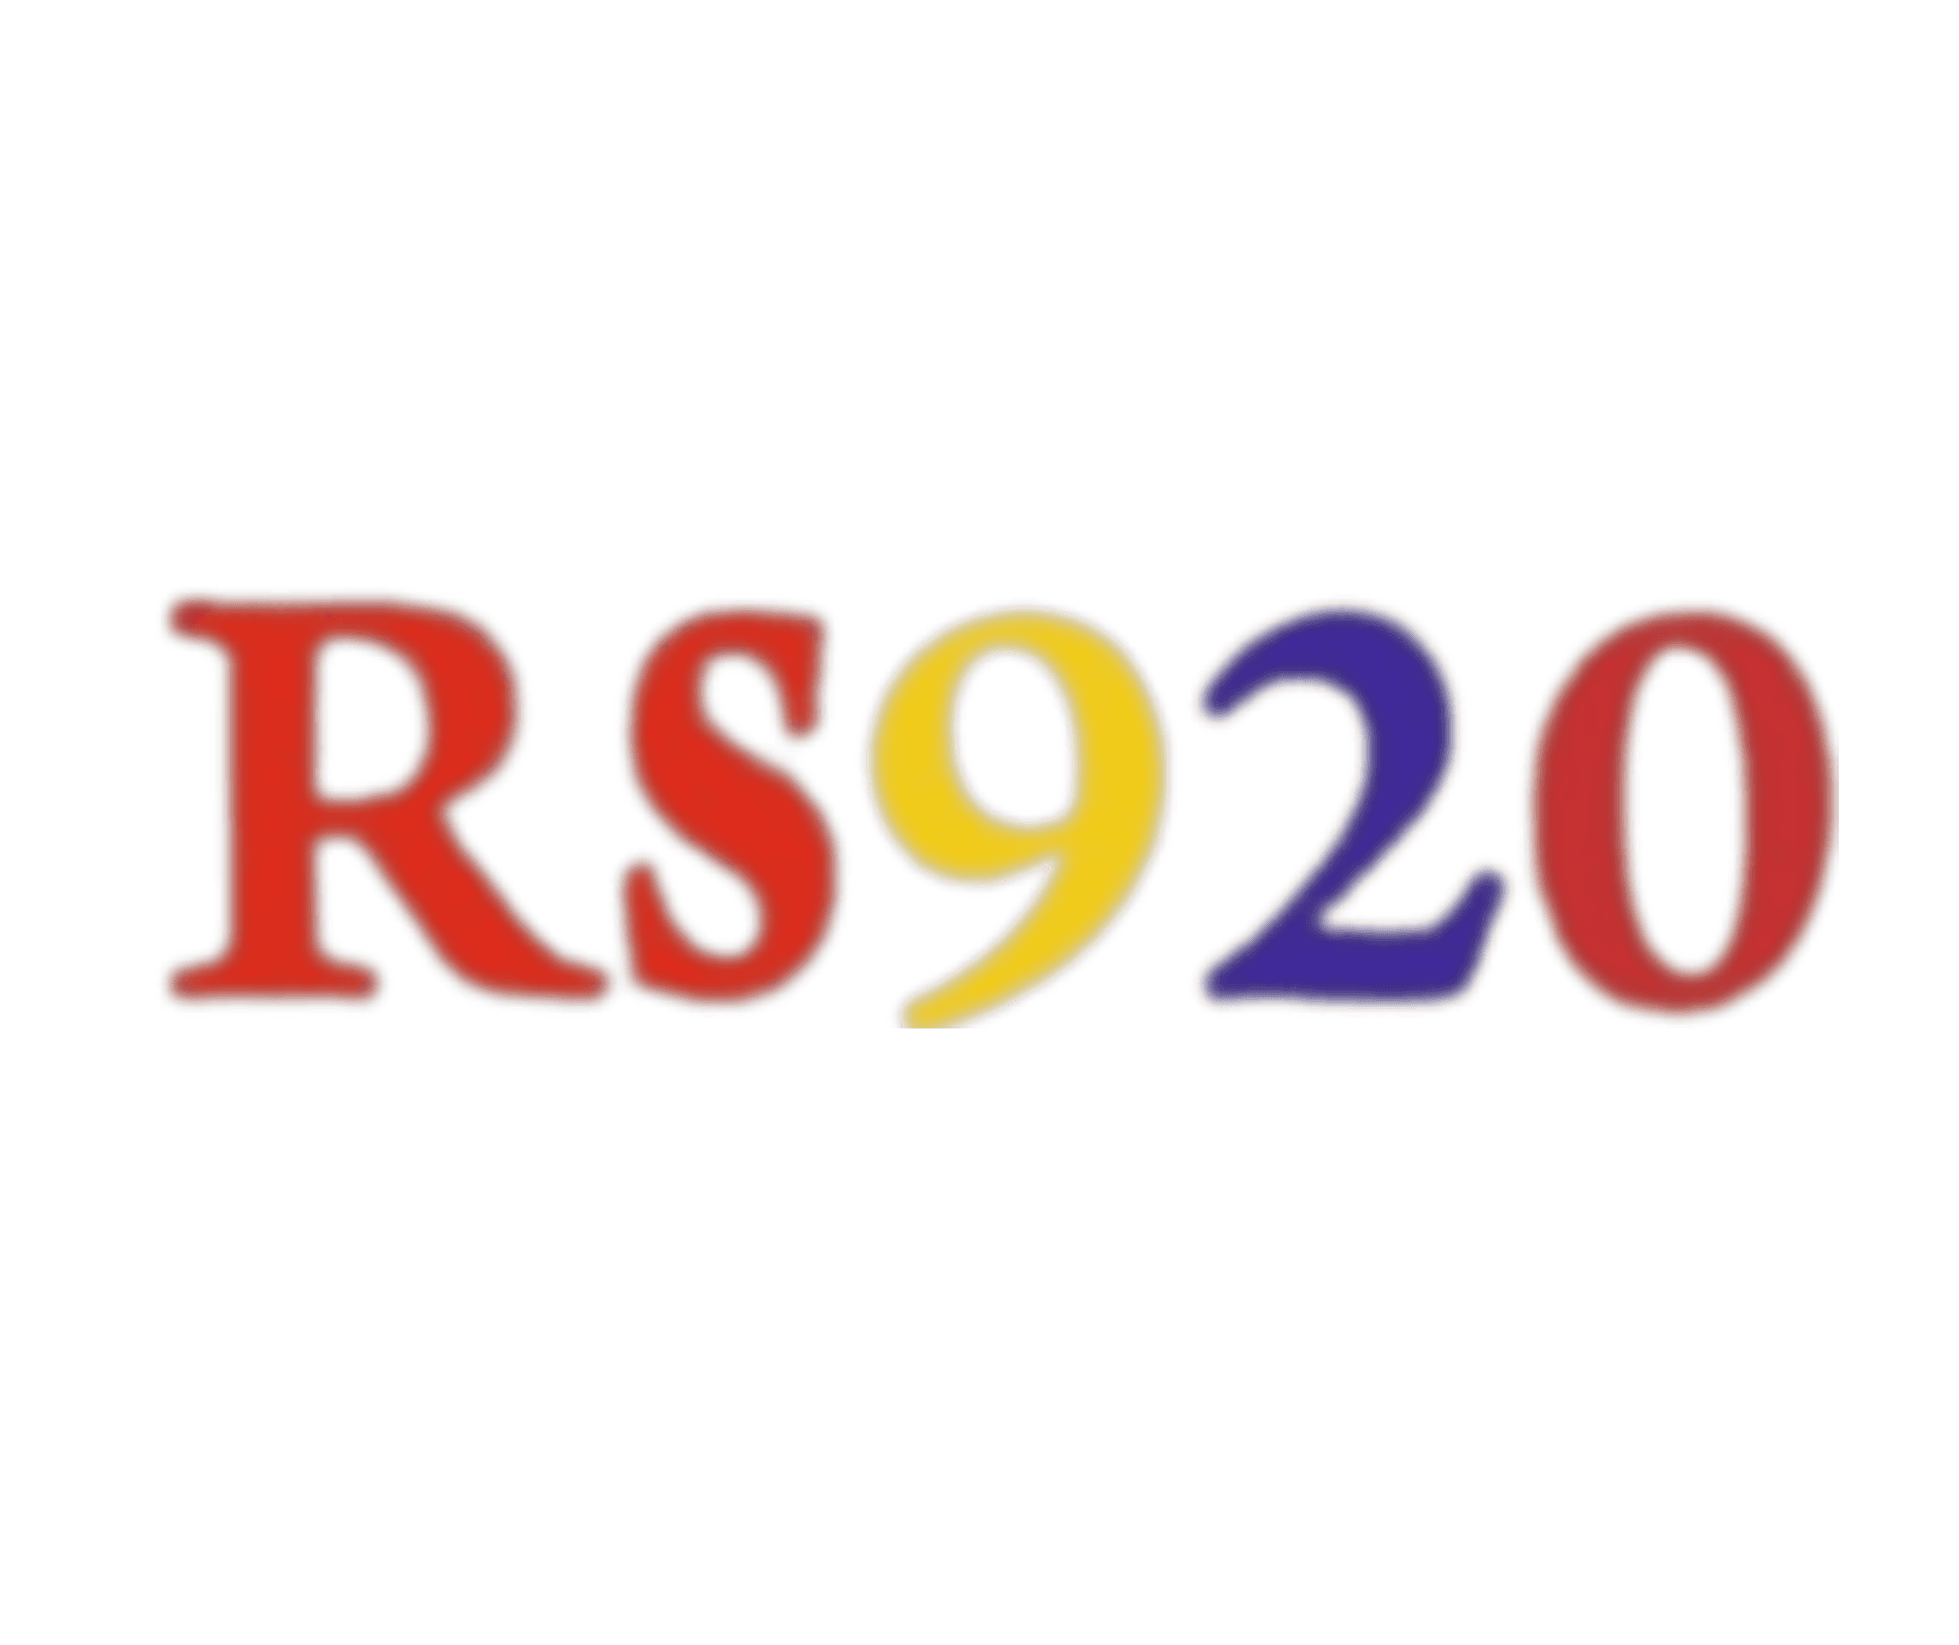 RS920 LLC